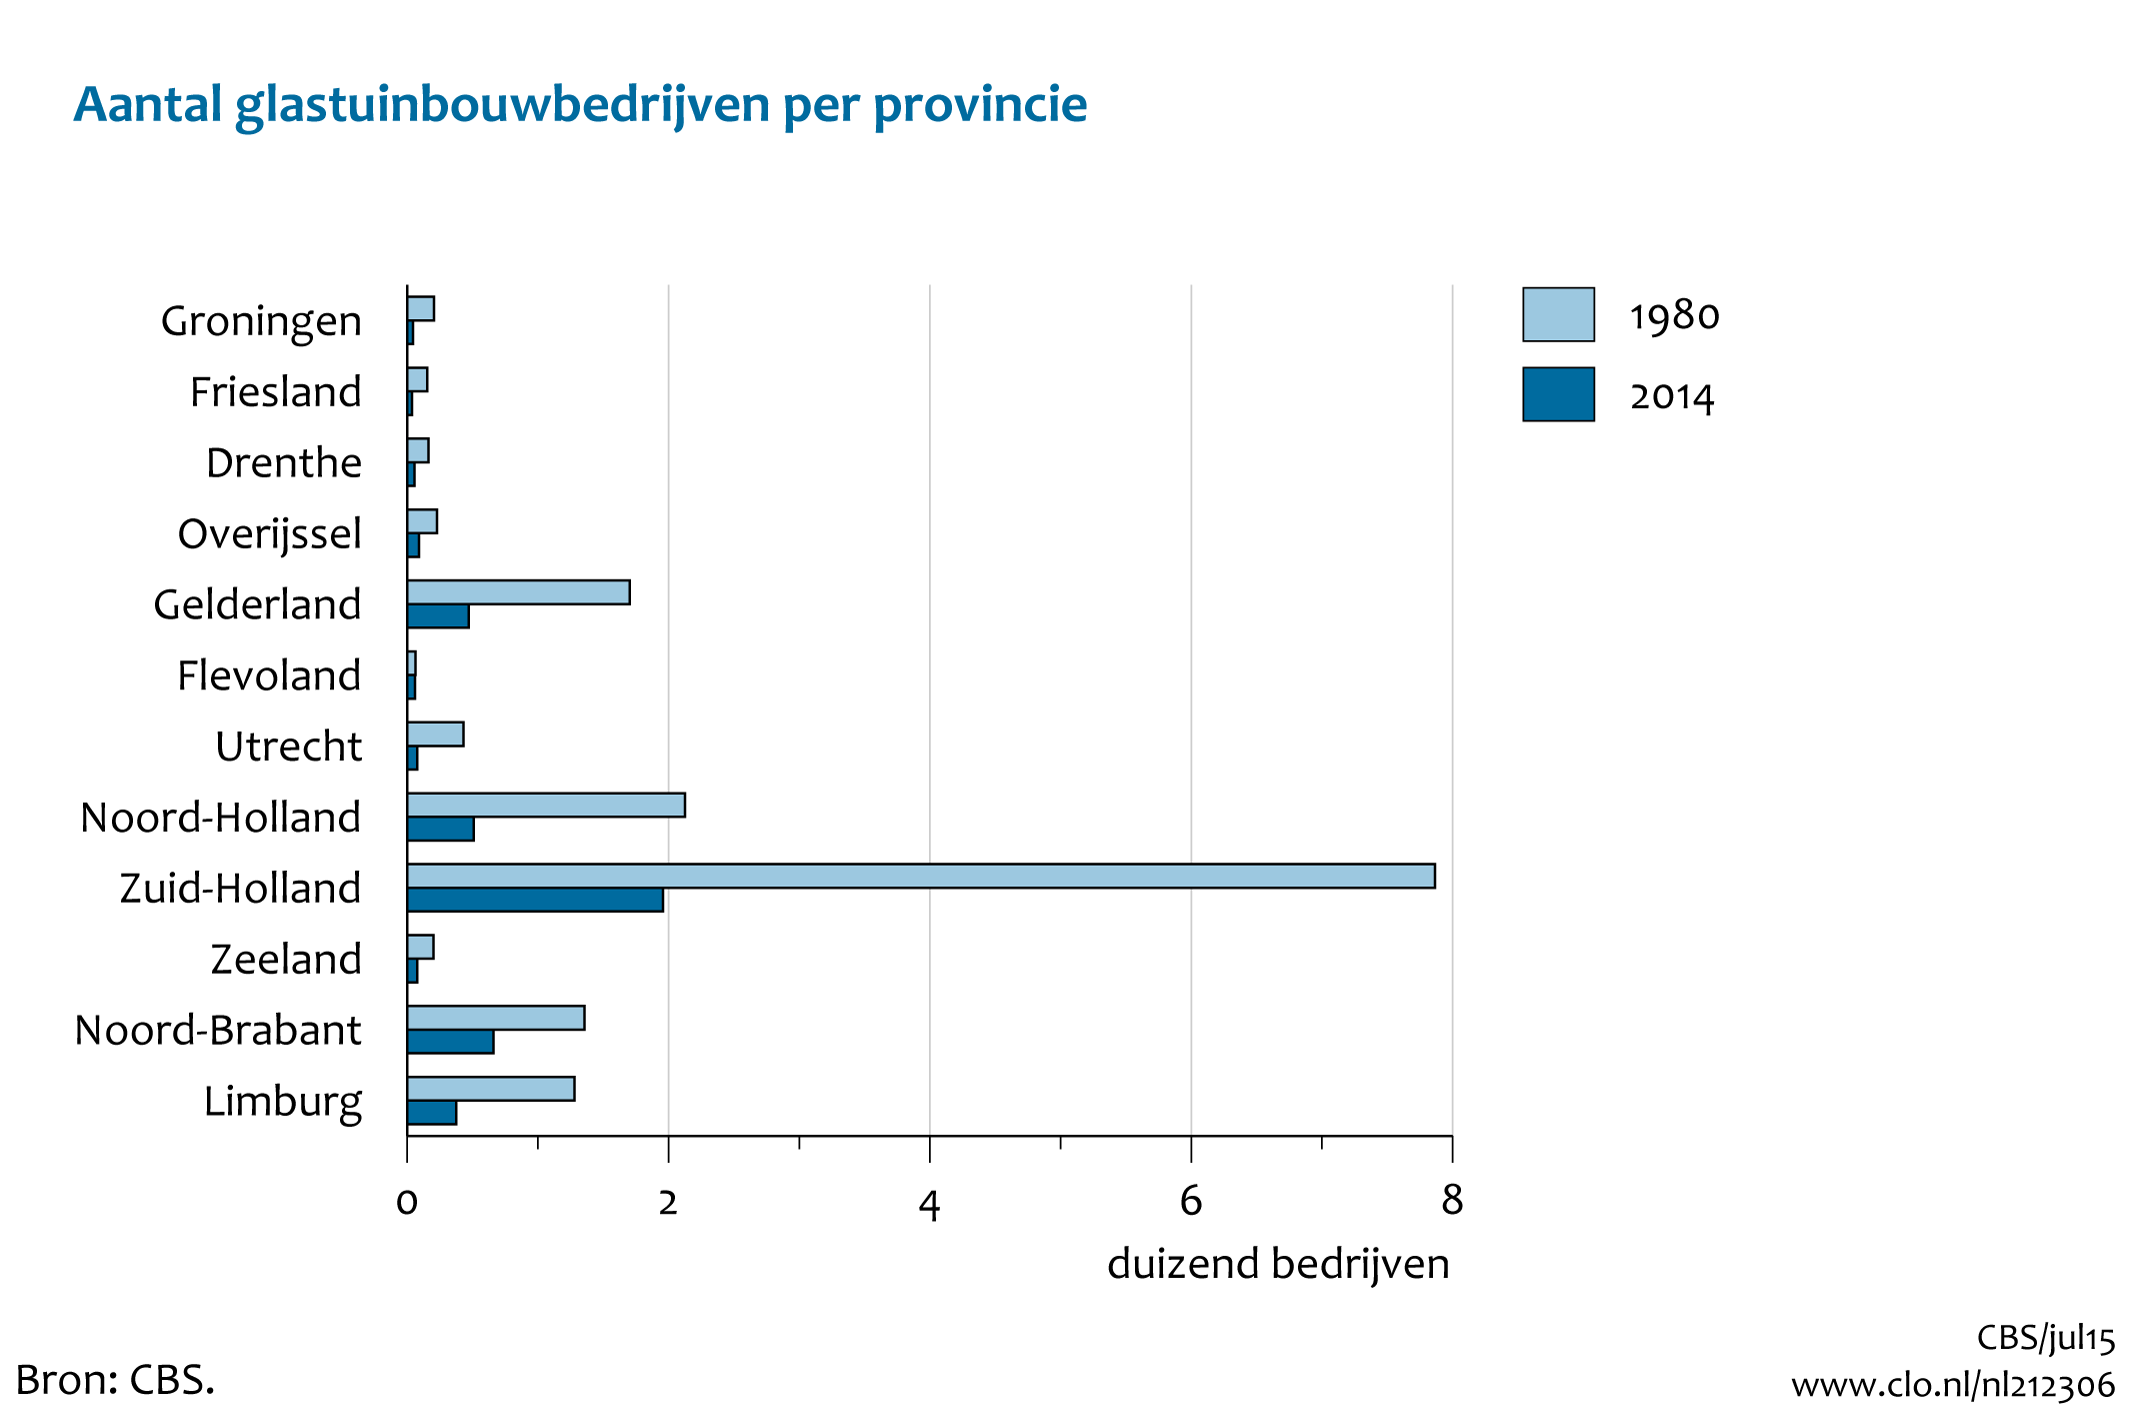 Figuur  Aantal glastuinbouwbedrijven per provincie, 1980-2014. In de rest van de tekst wordt deze figuur uitgebreider uitgelegd.